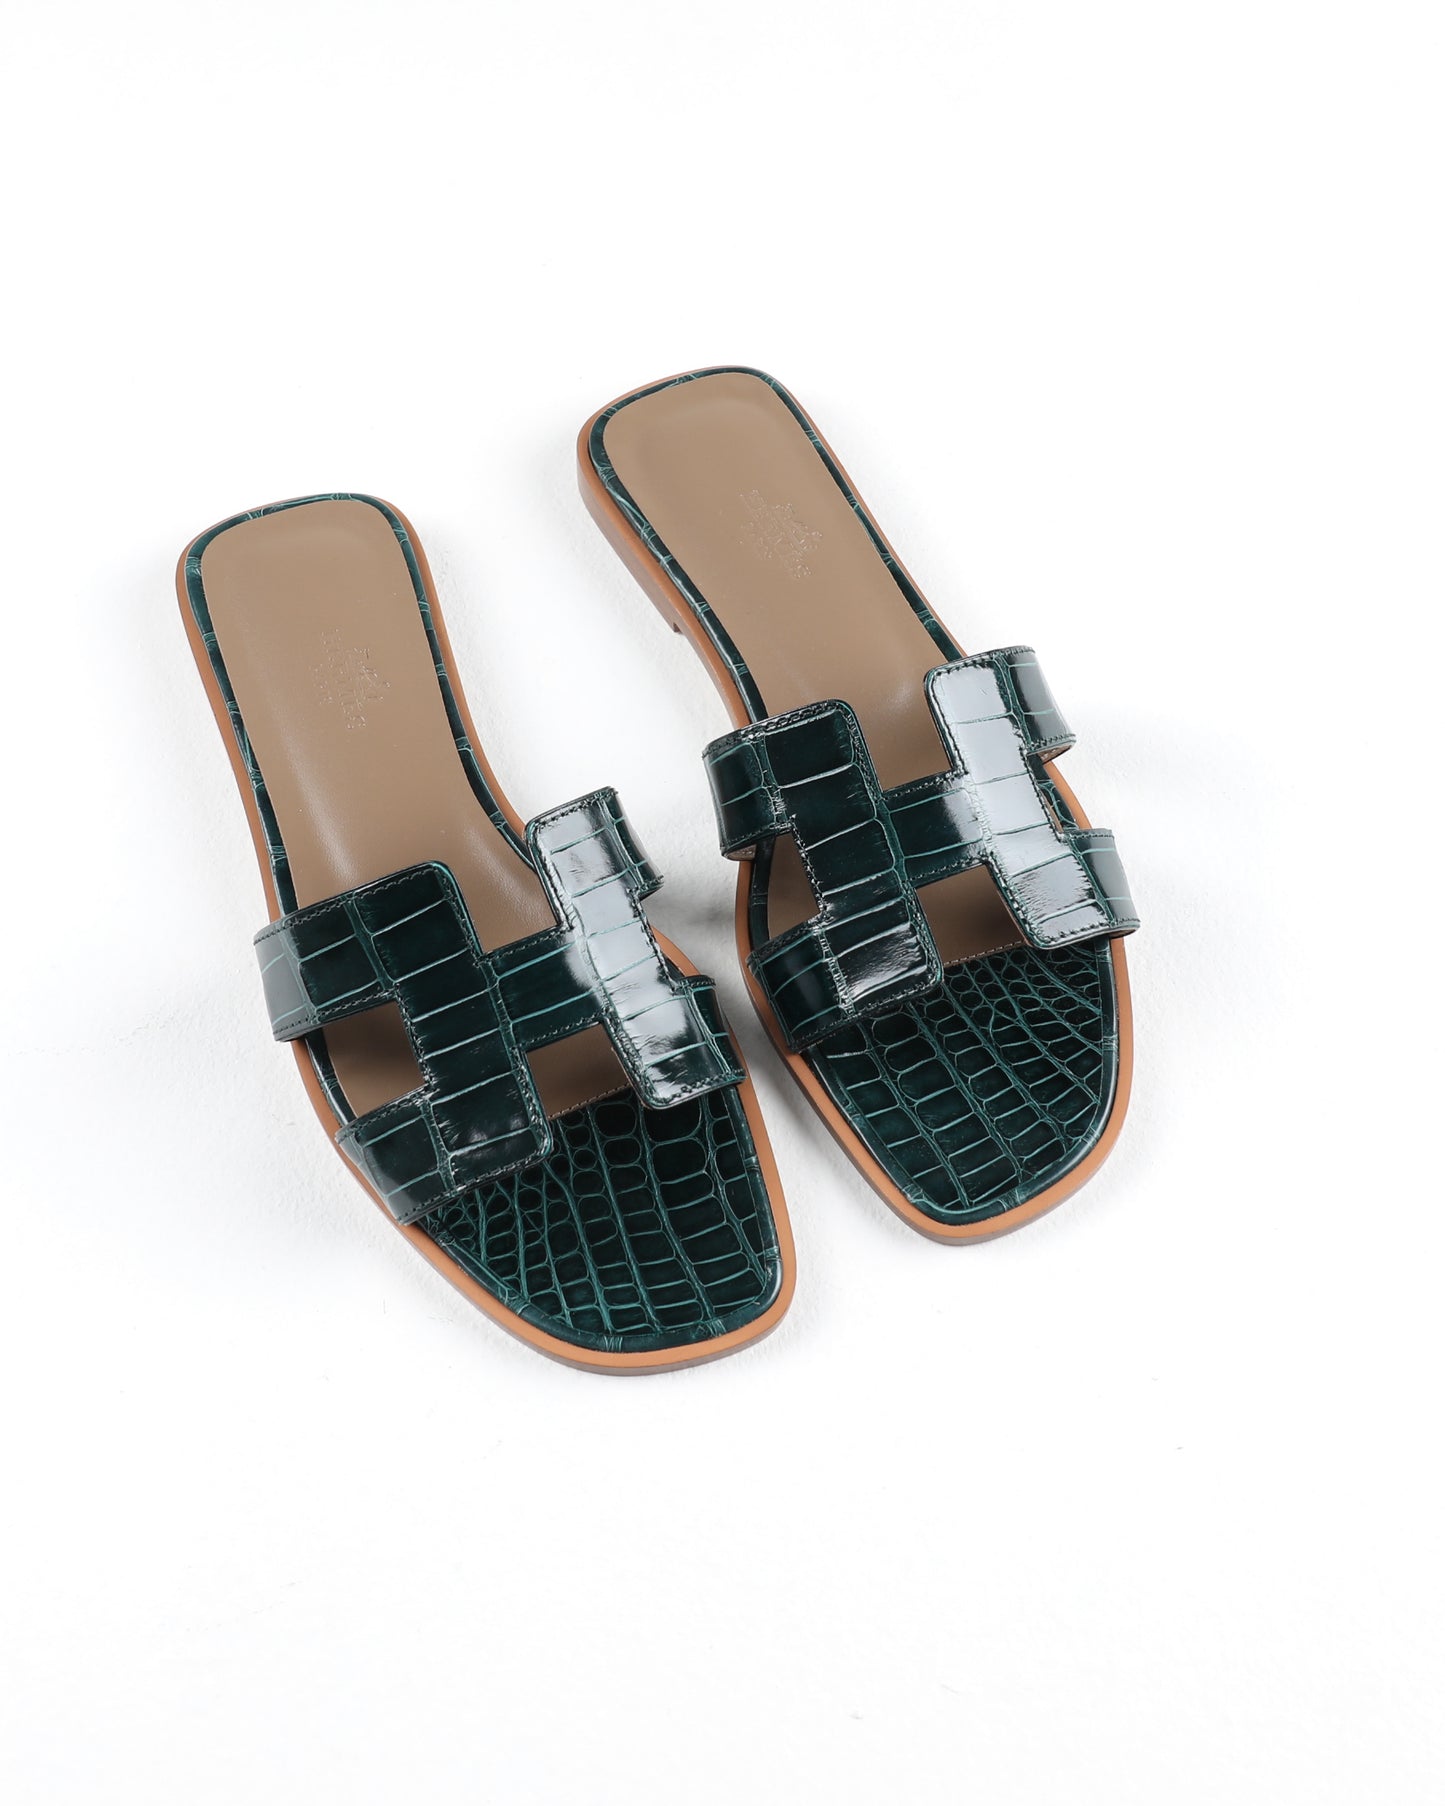 Oran Sandal in Vert Cypruss Crocodile Leather